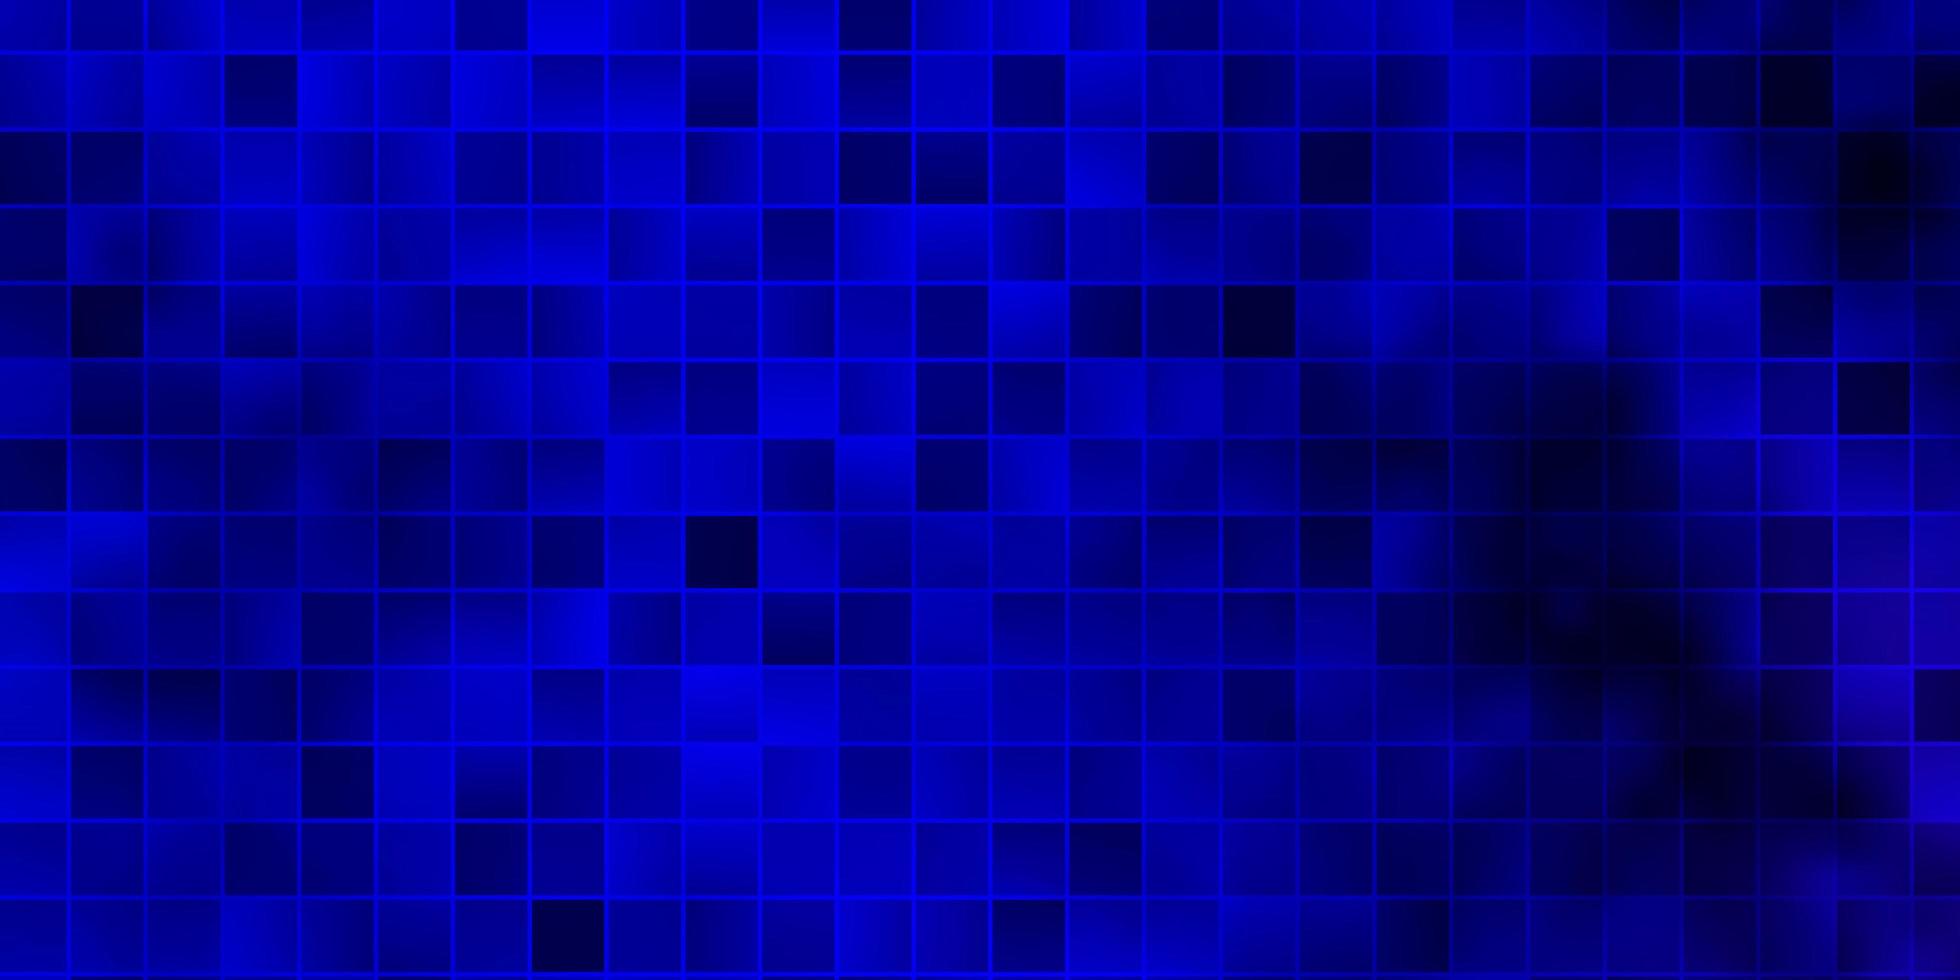 diseño de vector azul oscuro con líneas, rectángulos.